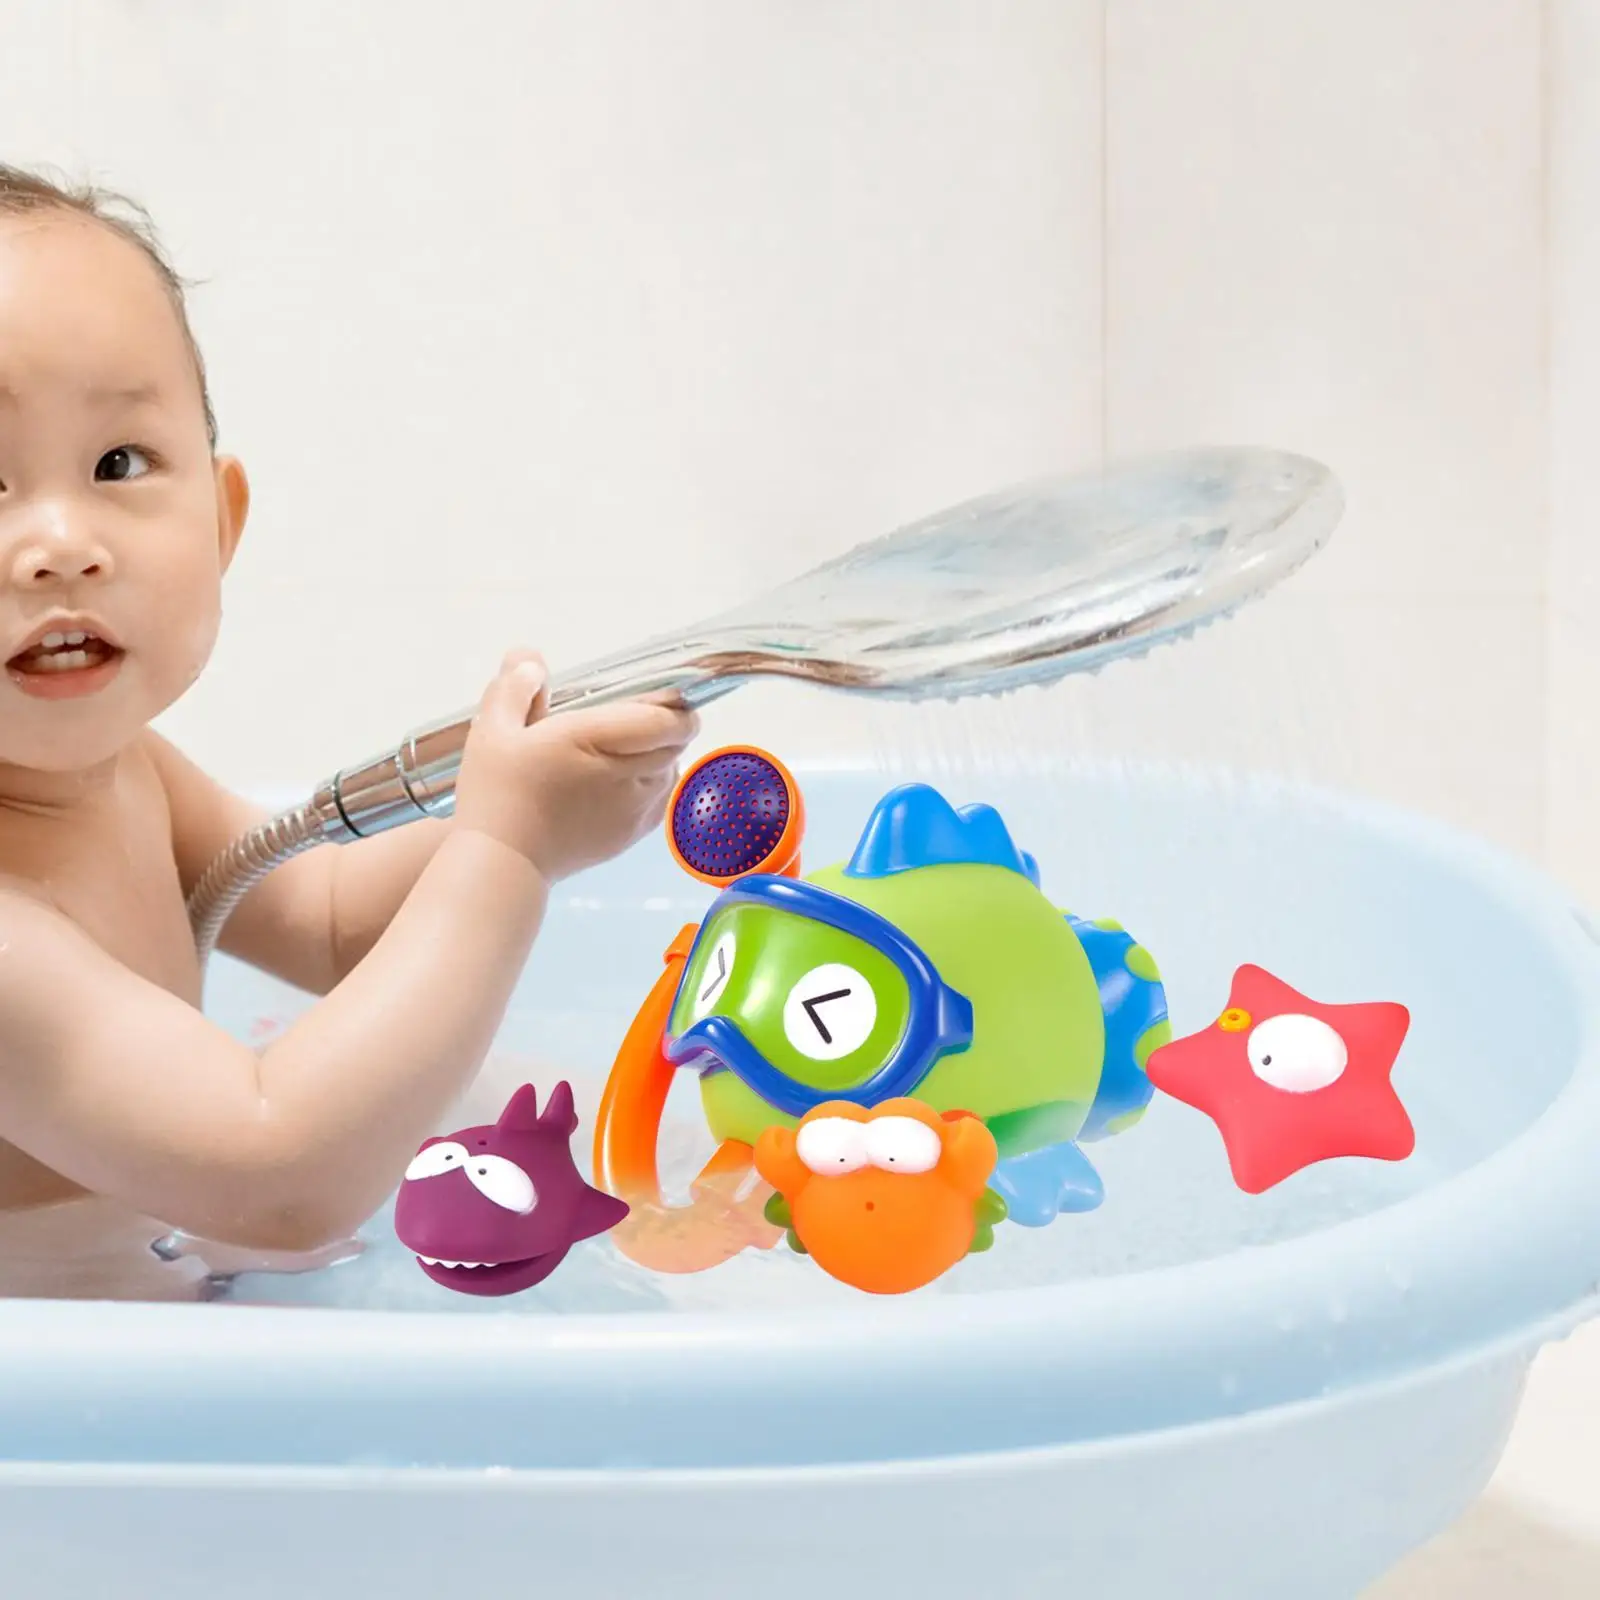 4x Fish Fountain Bath Toy Bathroom Water Playing Bath Ocean Sea Animal Bathtub Toys for Ages 1-5 Boys Kids Great Gifts